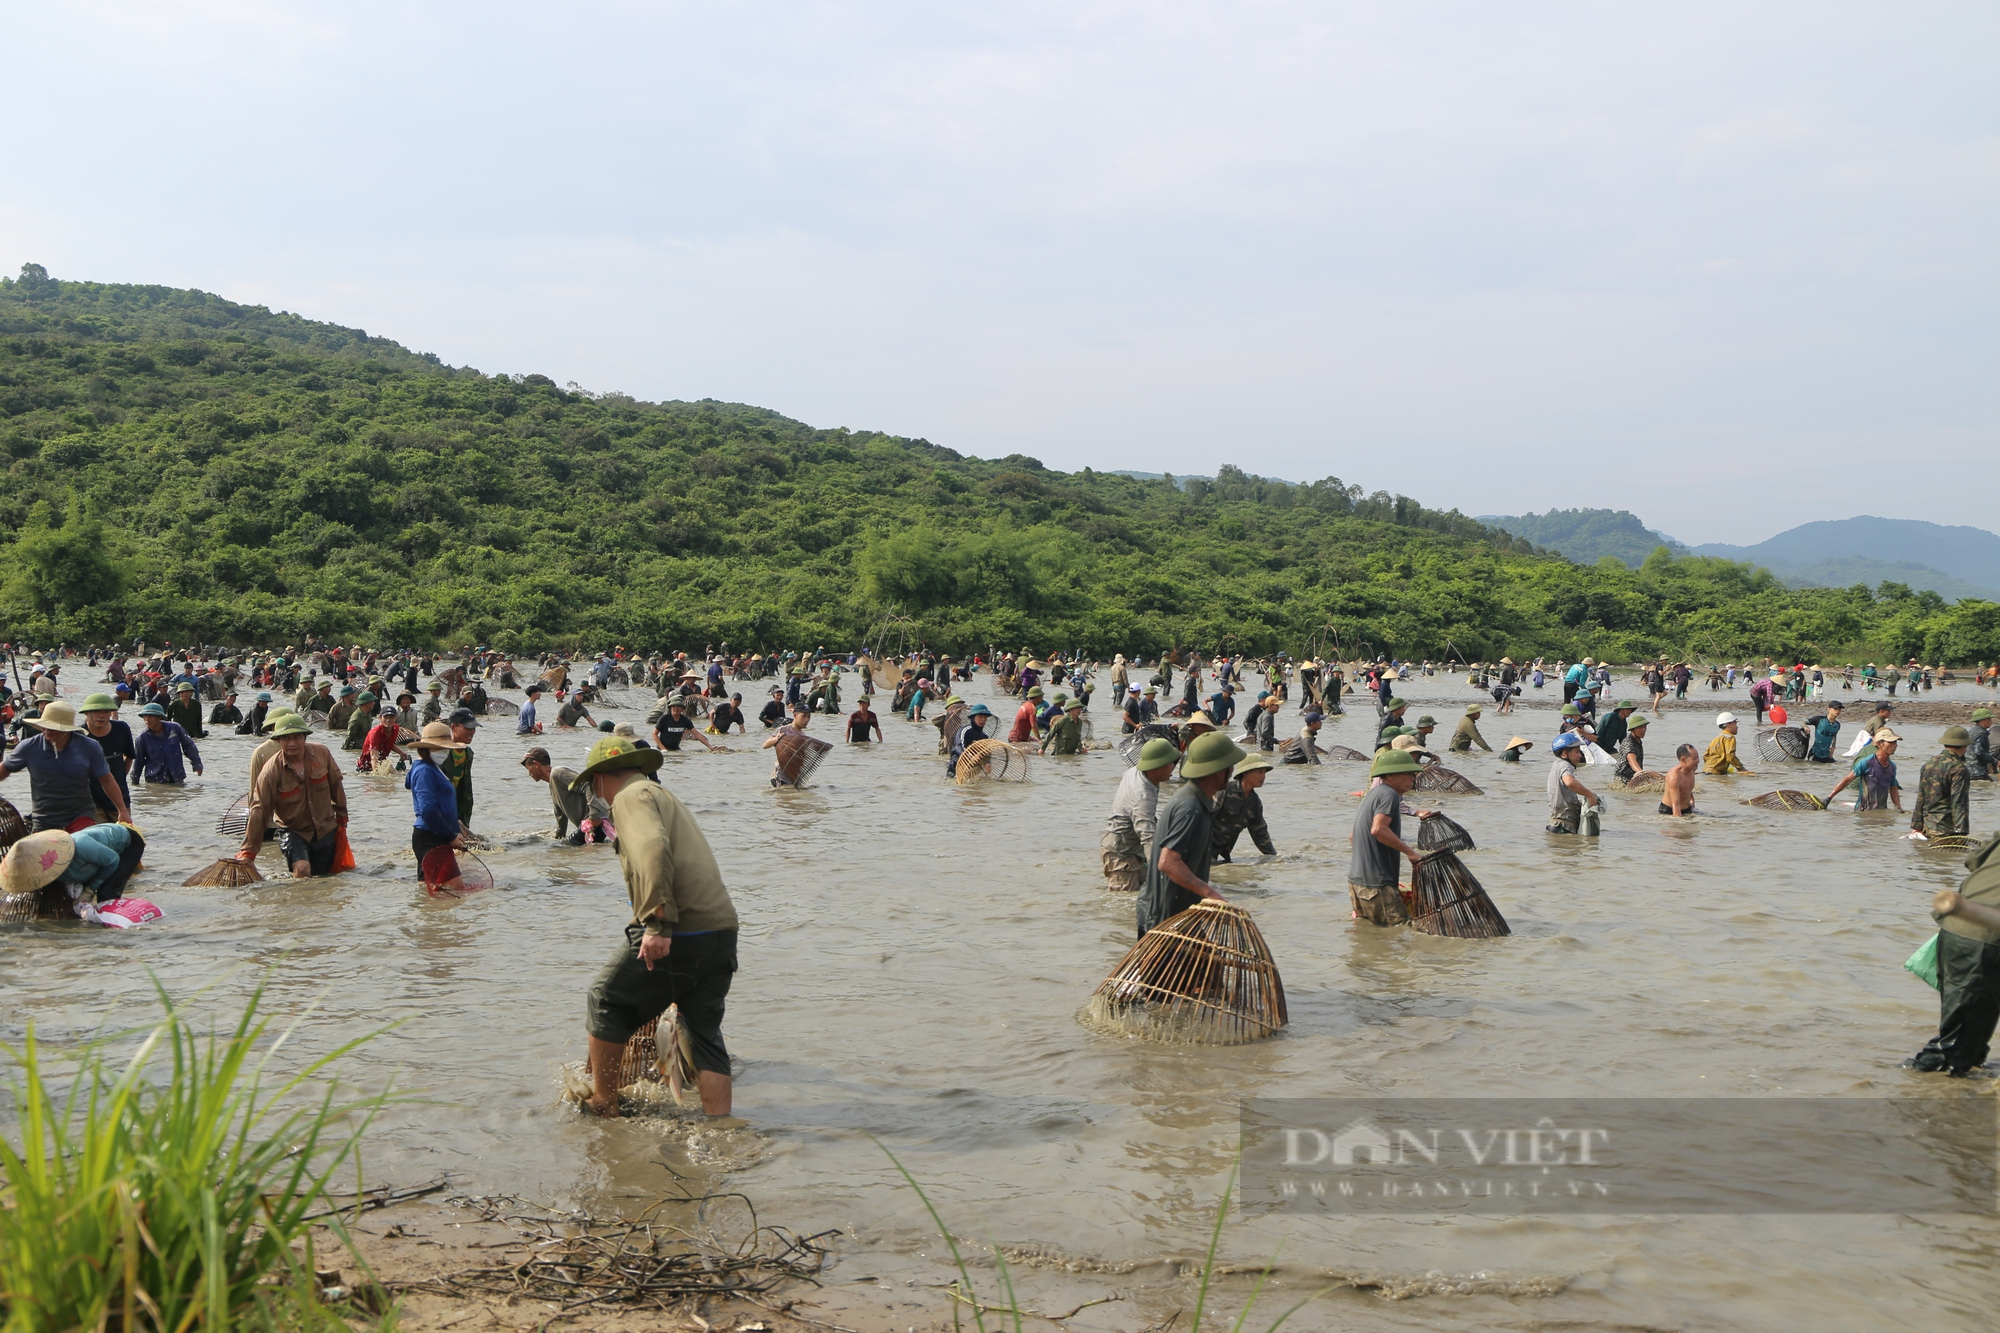 Hà Tĩnh: Hàng ngàn người lội nước, tham gia lễ hội bắt cá cầu may - Ảnh 4.